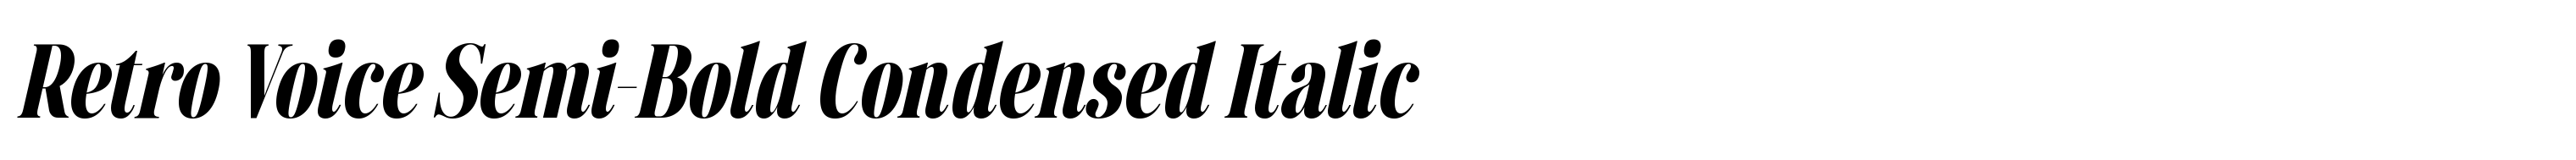 Retro Voice Semi-Bold Condensed Italic